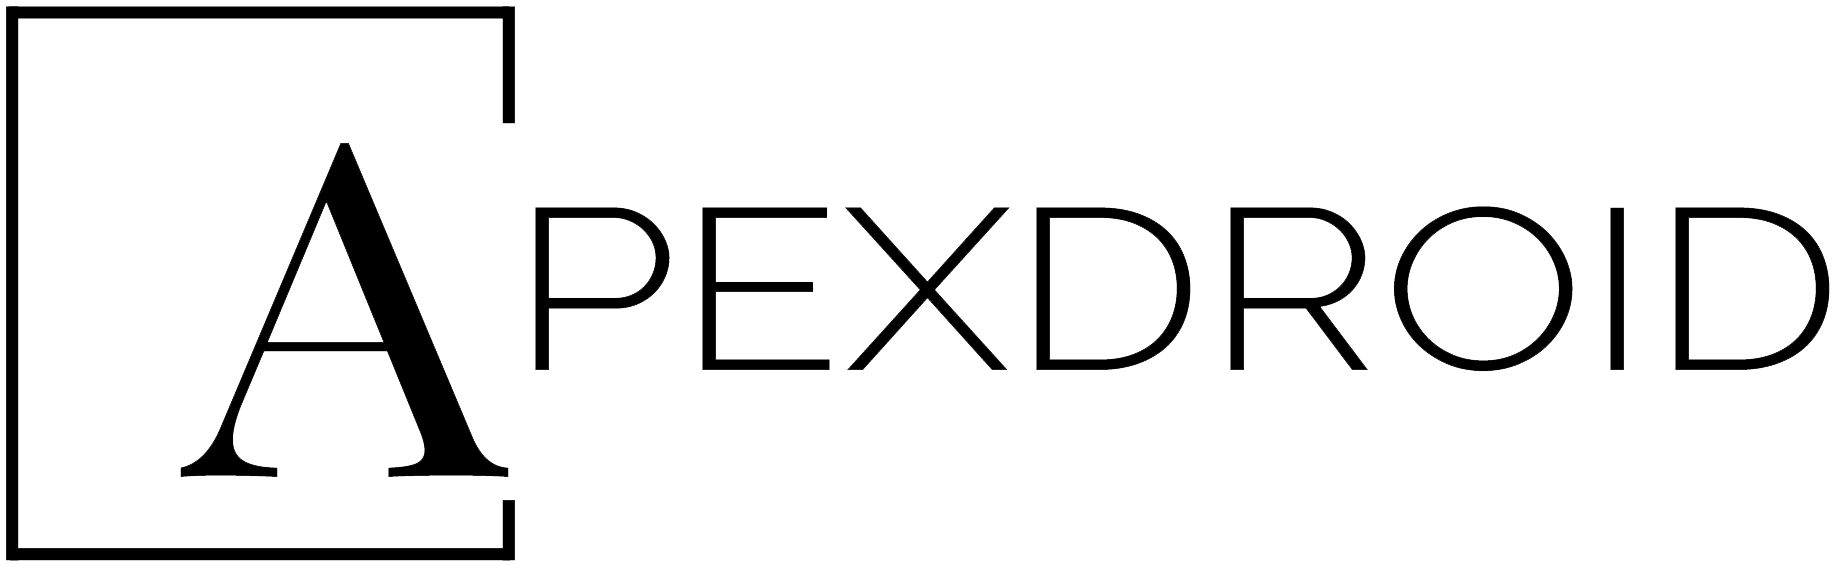 apexdroid_logo